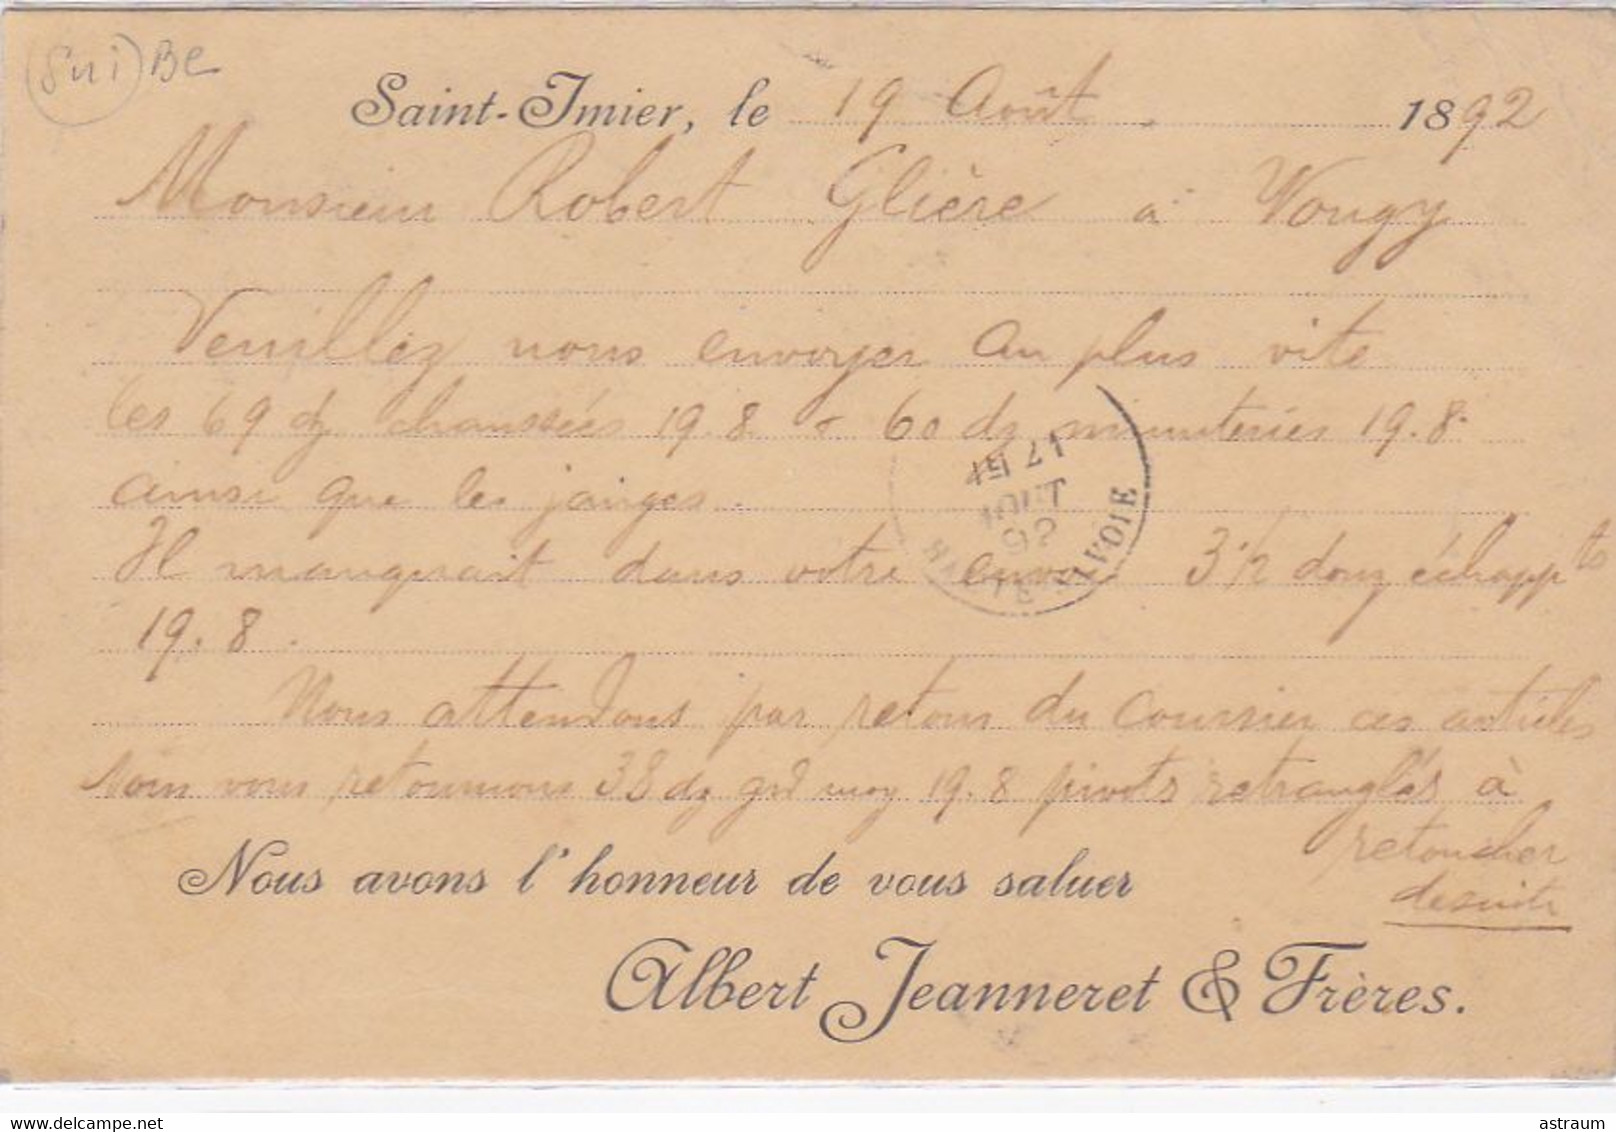 Cpa (commerciale)-sui- St Imier -- Fabrique D'horlogerie Alb.Jeanneret & Freres 19 Aout 1892 - Saint-Imier 